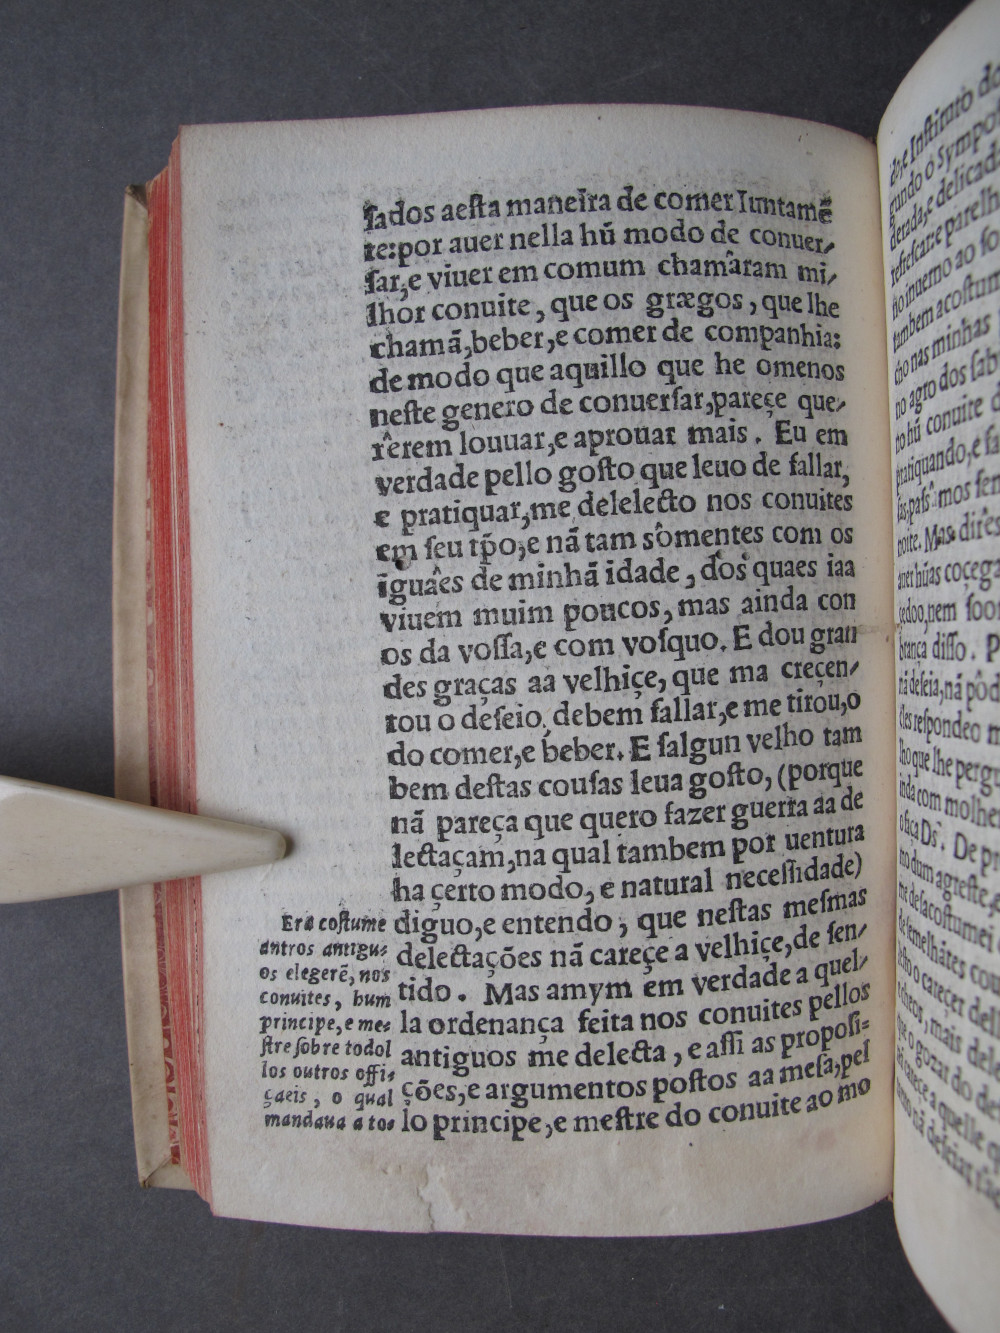 Folio C7 verso